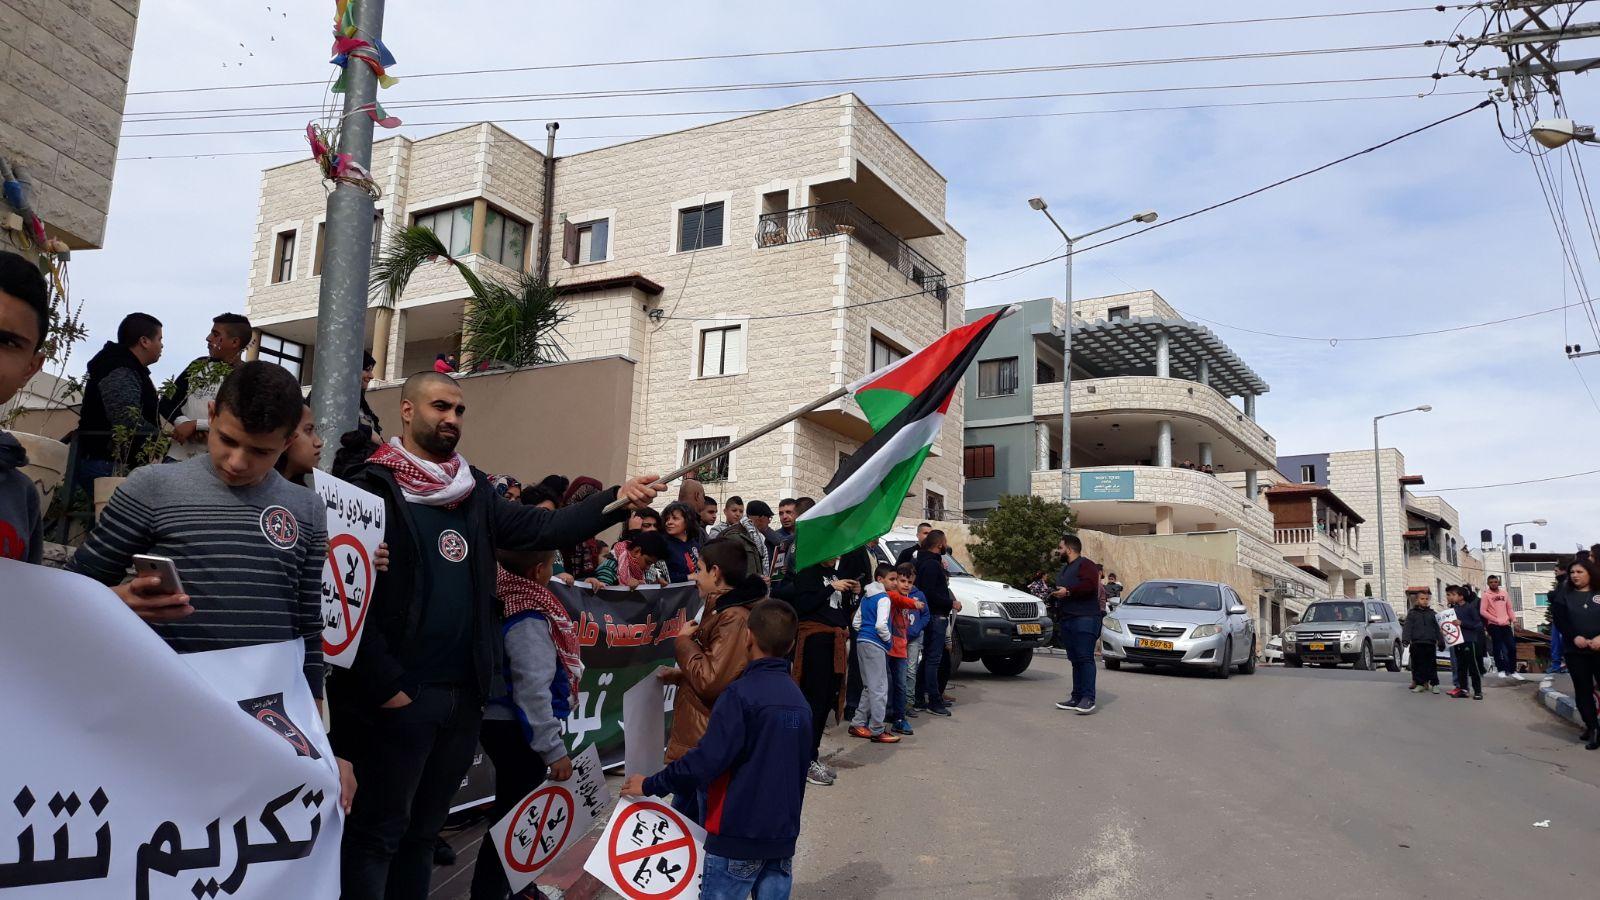  بركة: يتحتّم على فلسطينيي الداخل استقبال نتنياهو   بالصرامي على وجهه   2017122812470664